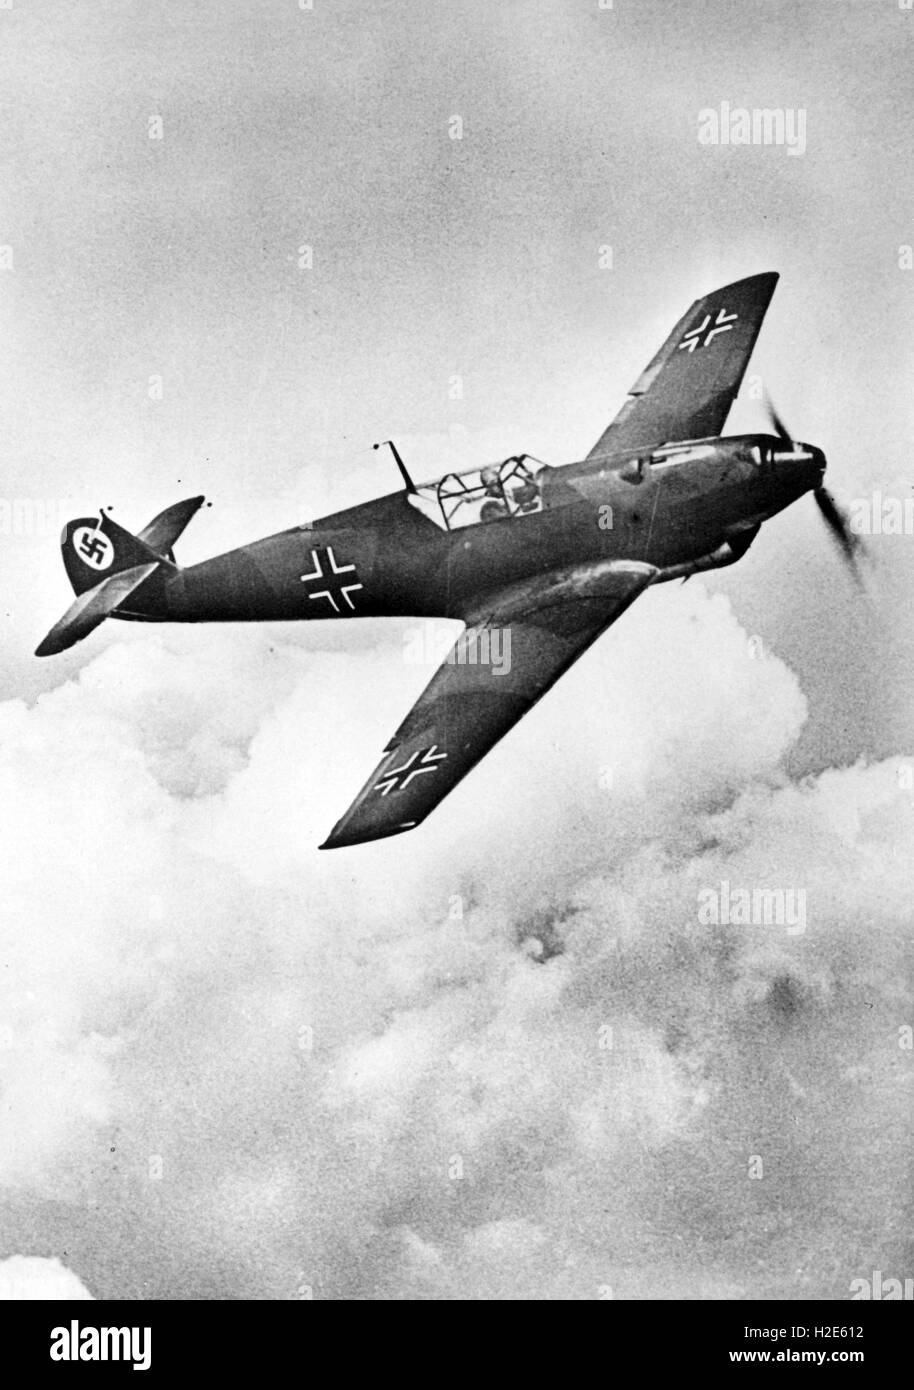 L'image de l'archive de propagande nazie de janvier 1939 représente un avion de chasse de type Messerschmitt BF 109 de la Wehrmacht allemande. La photo a été publiée en décembre 1939. Fotoarchiv für Zeitgeschichte - PAS DE SERVICE DE FIL - | utilisation dans le monde entier Banque D'Images